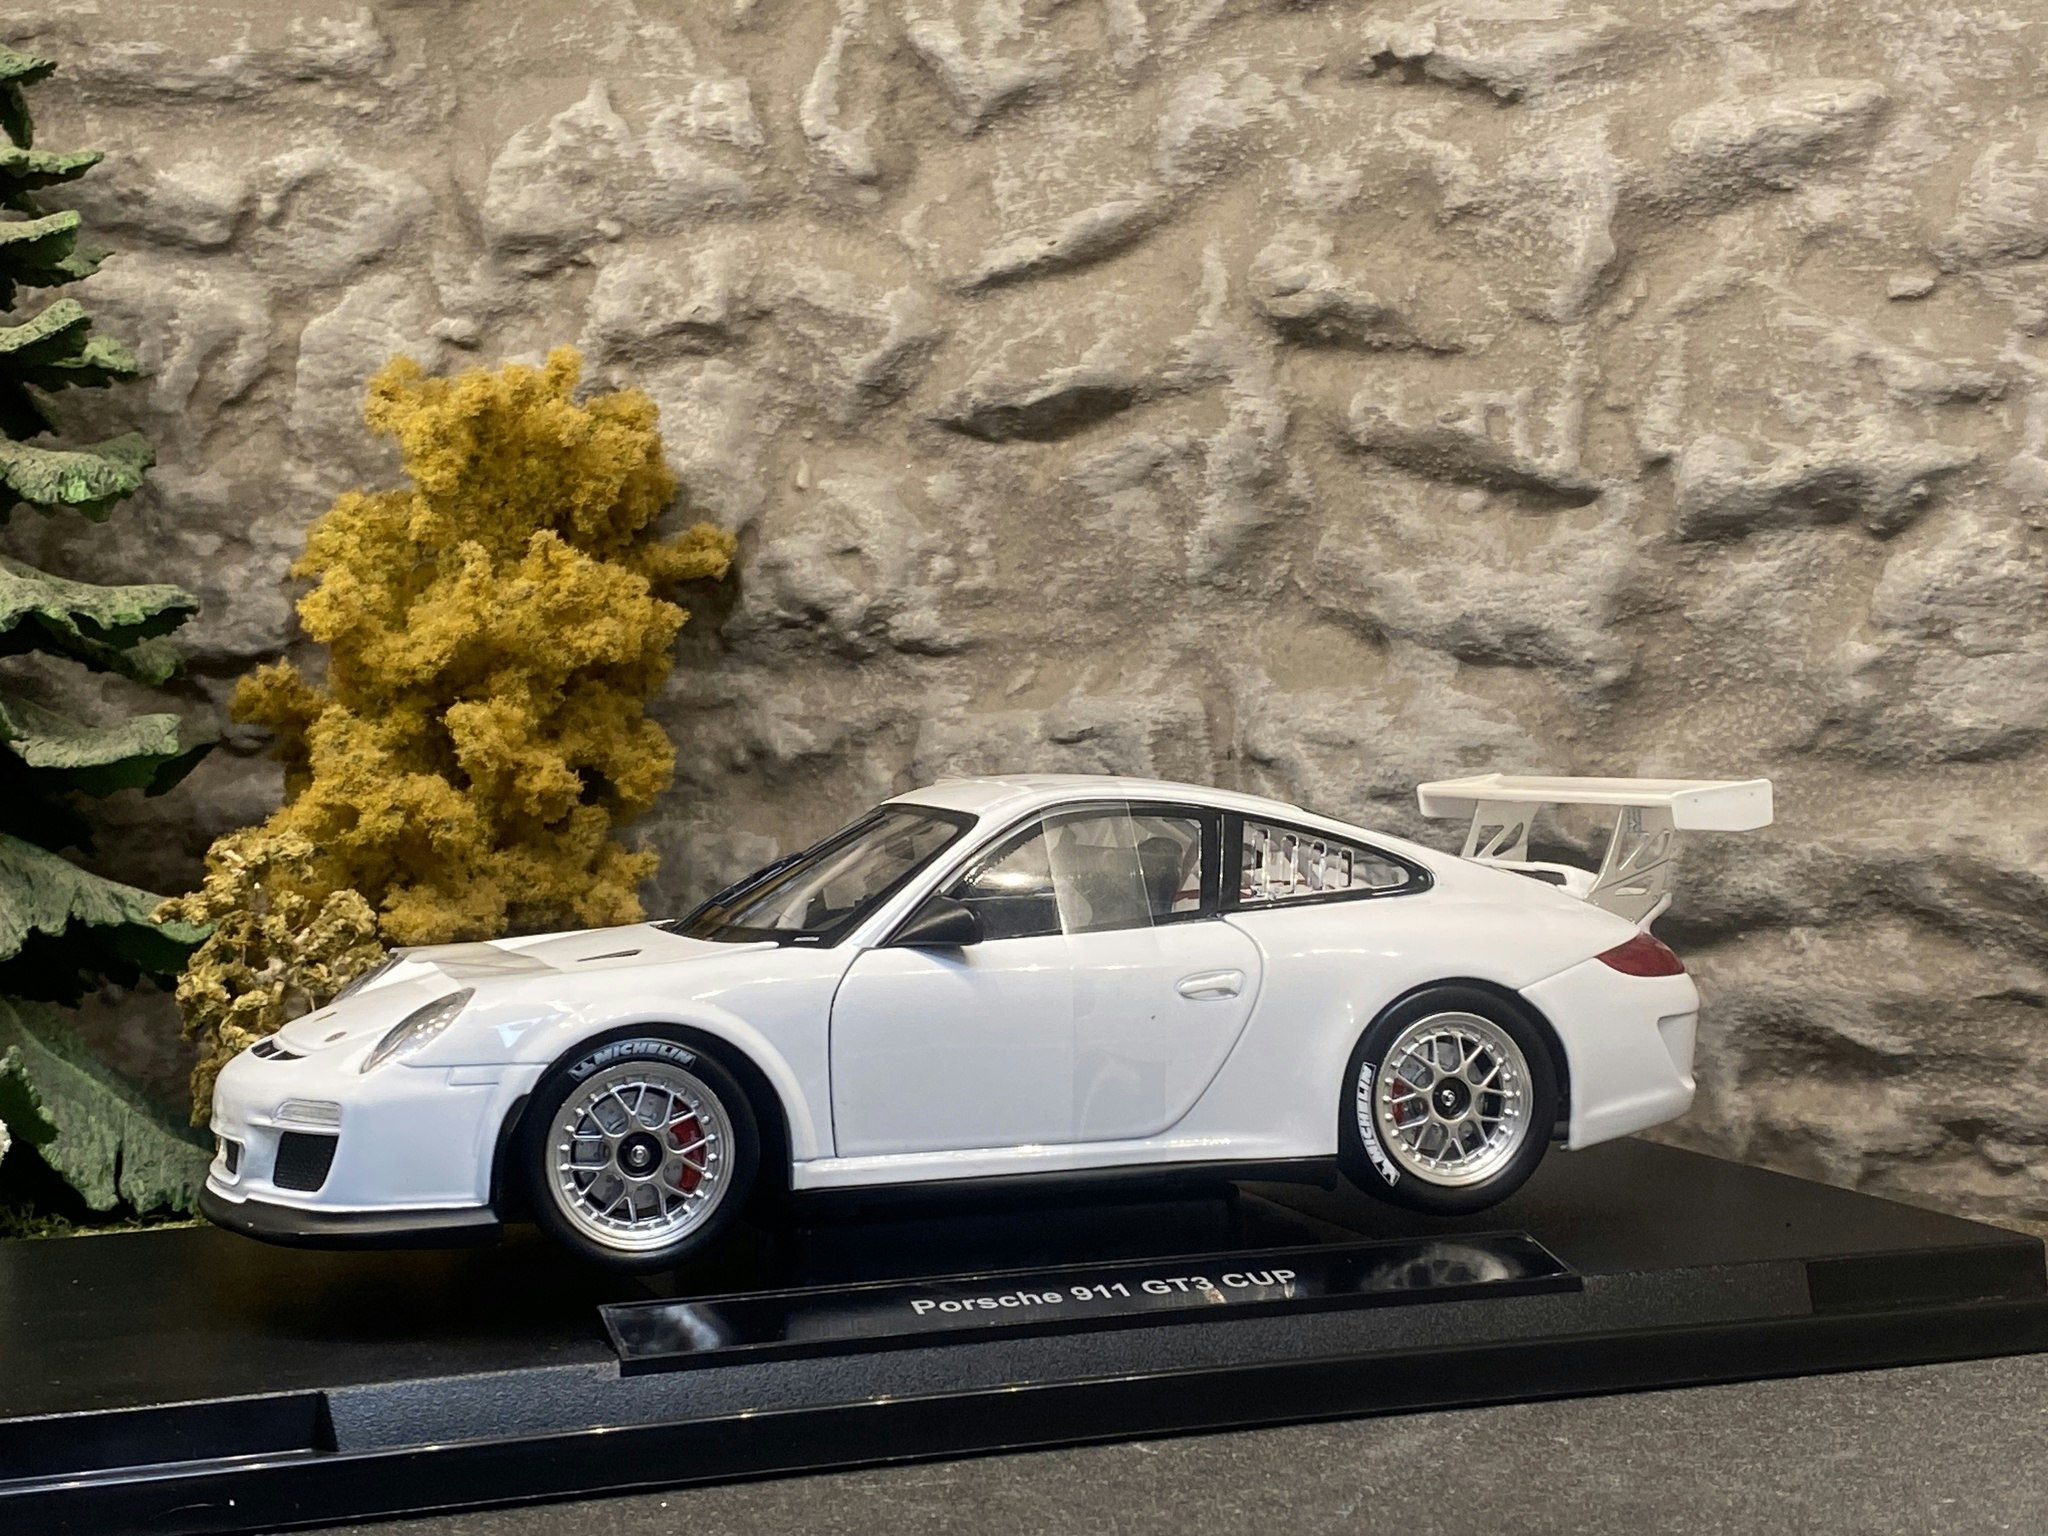 Skala 1/18 Porsche 911 GT3 Cup, White, Nex-models / Welly